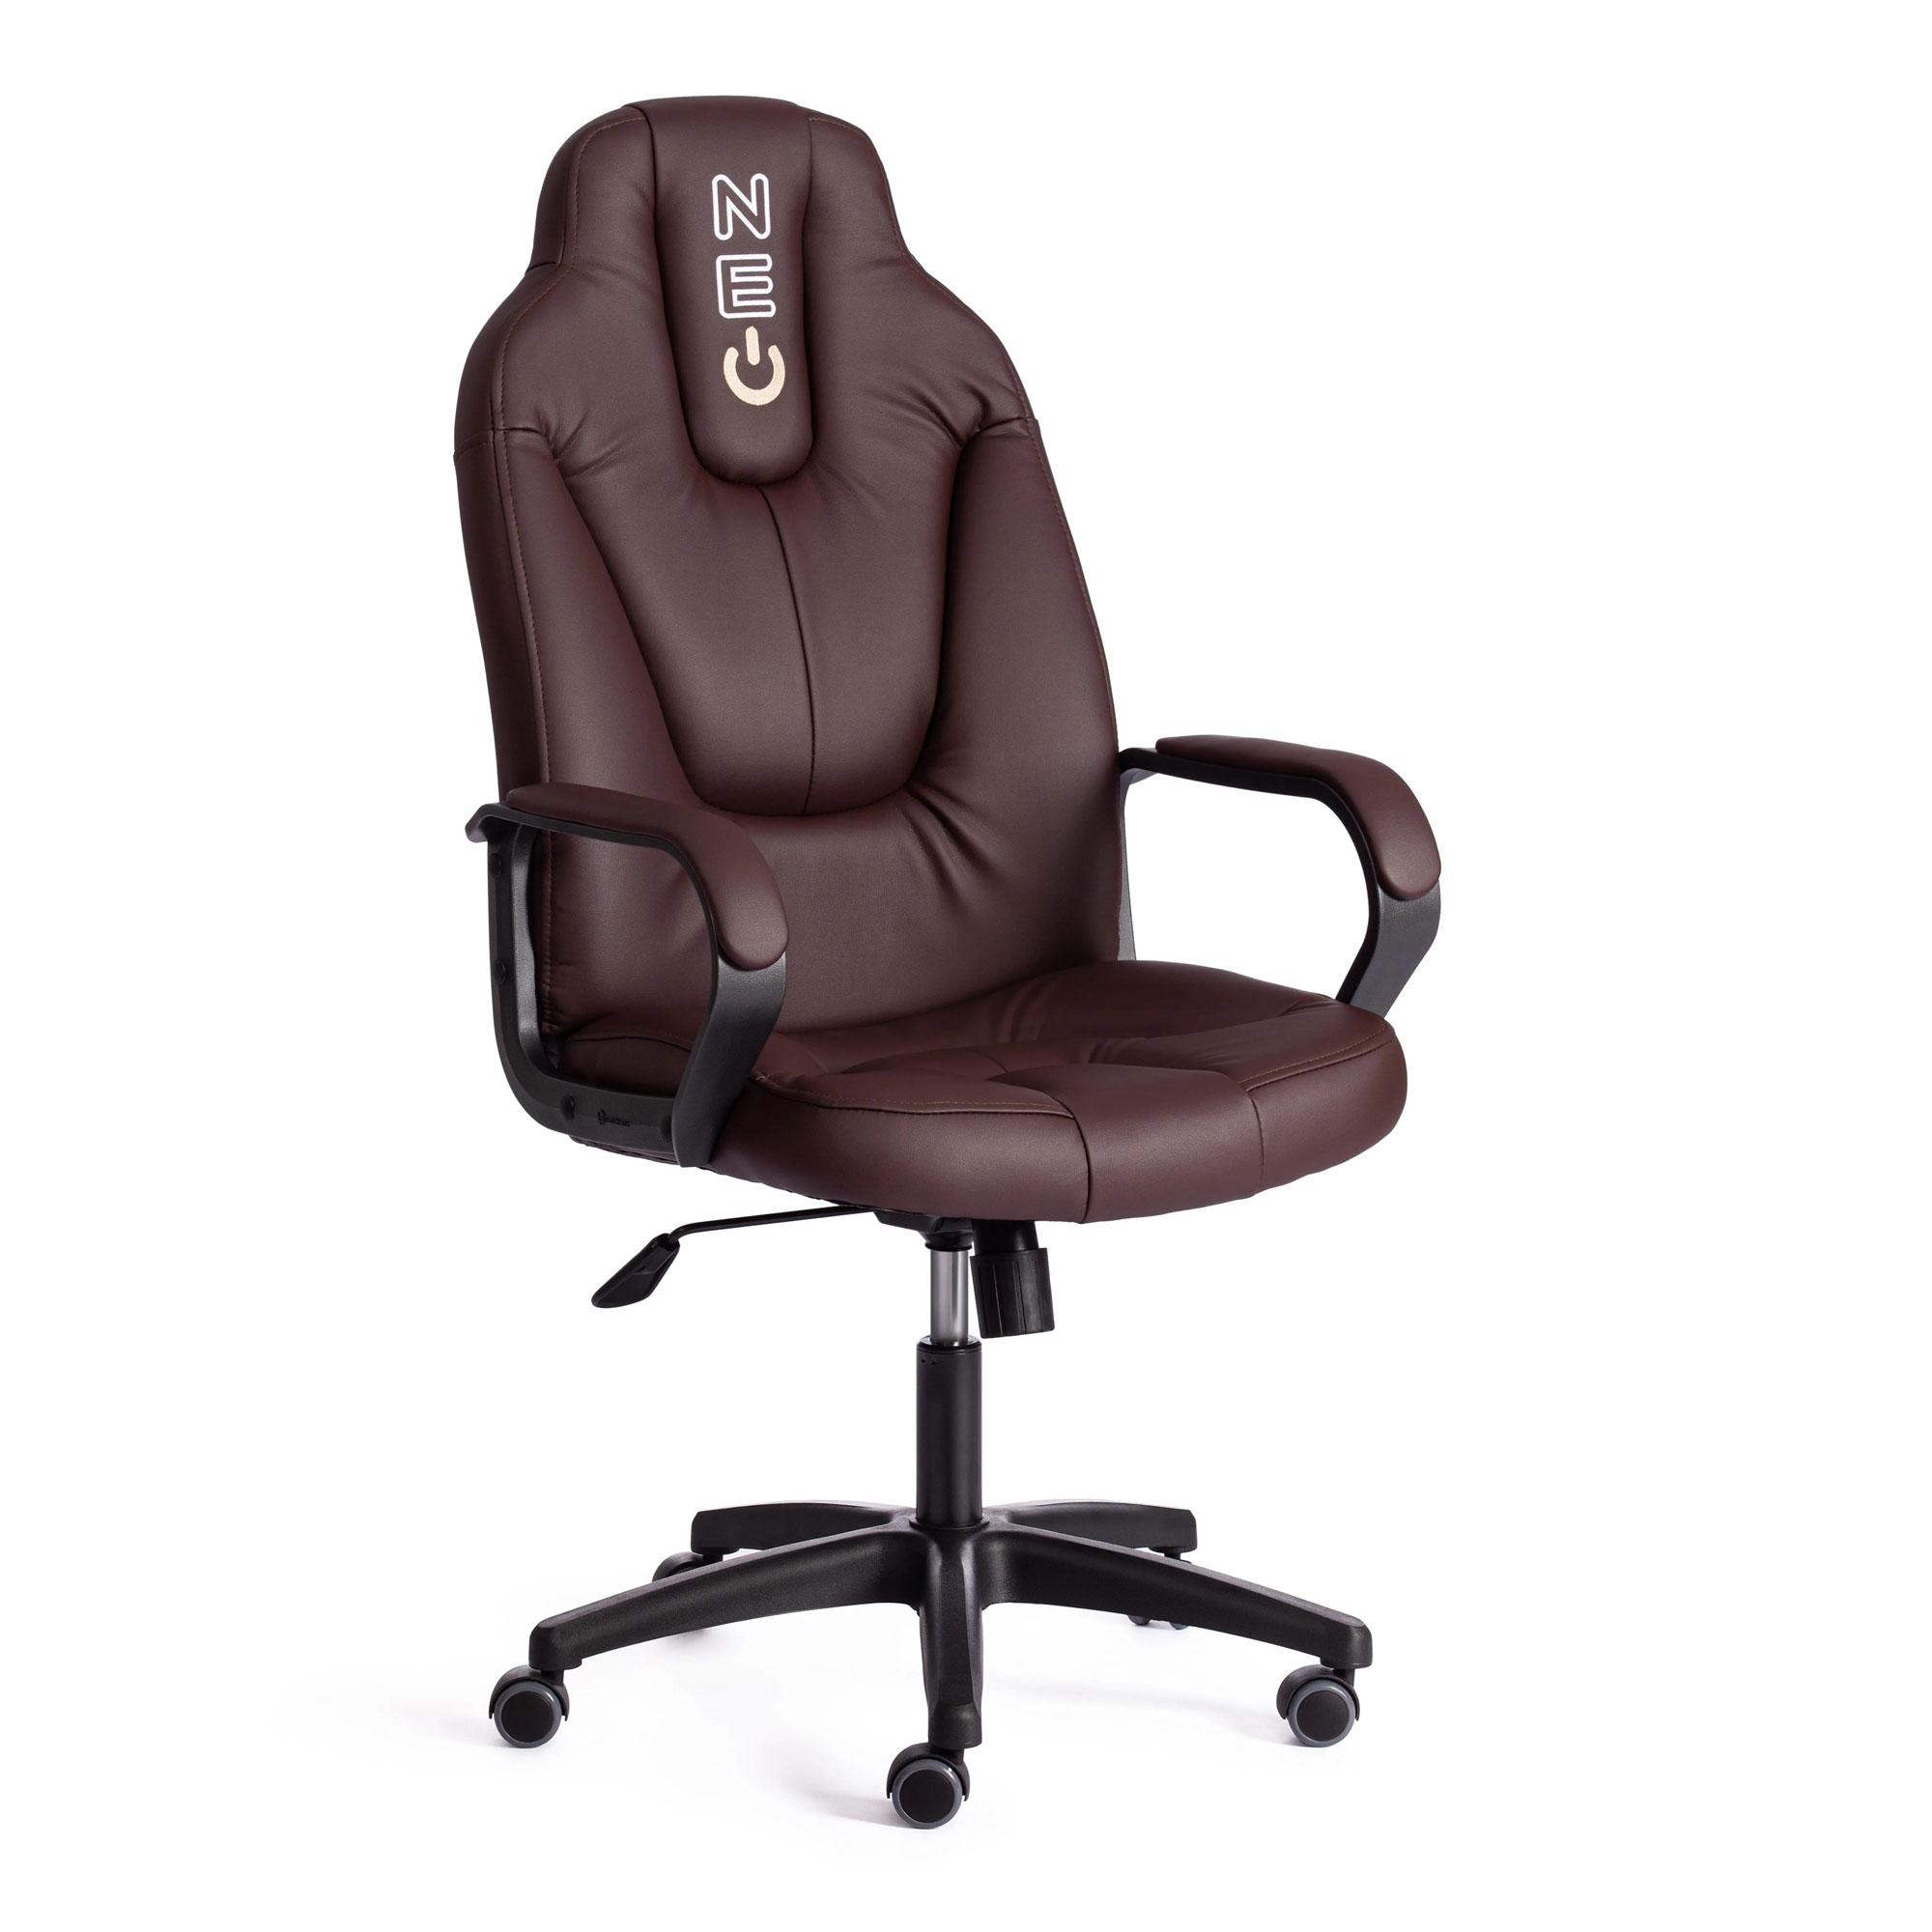 Кресло компьютерное TC Neo искусственная кожа коричневое 64х49х122 см офисное кресло ch 1399 сетка синяя искусственная кожа синяя